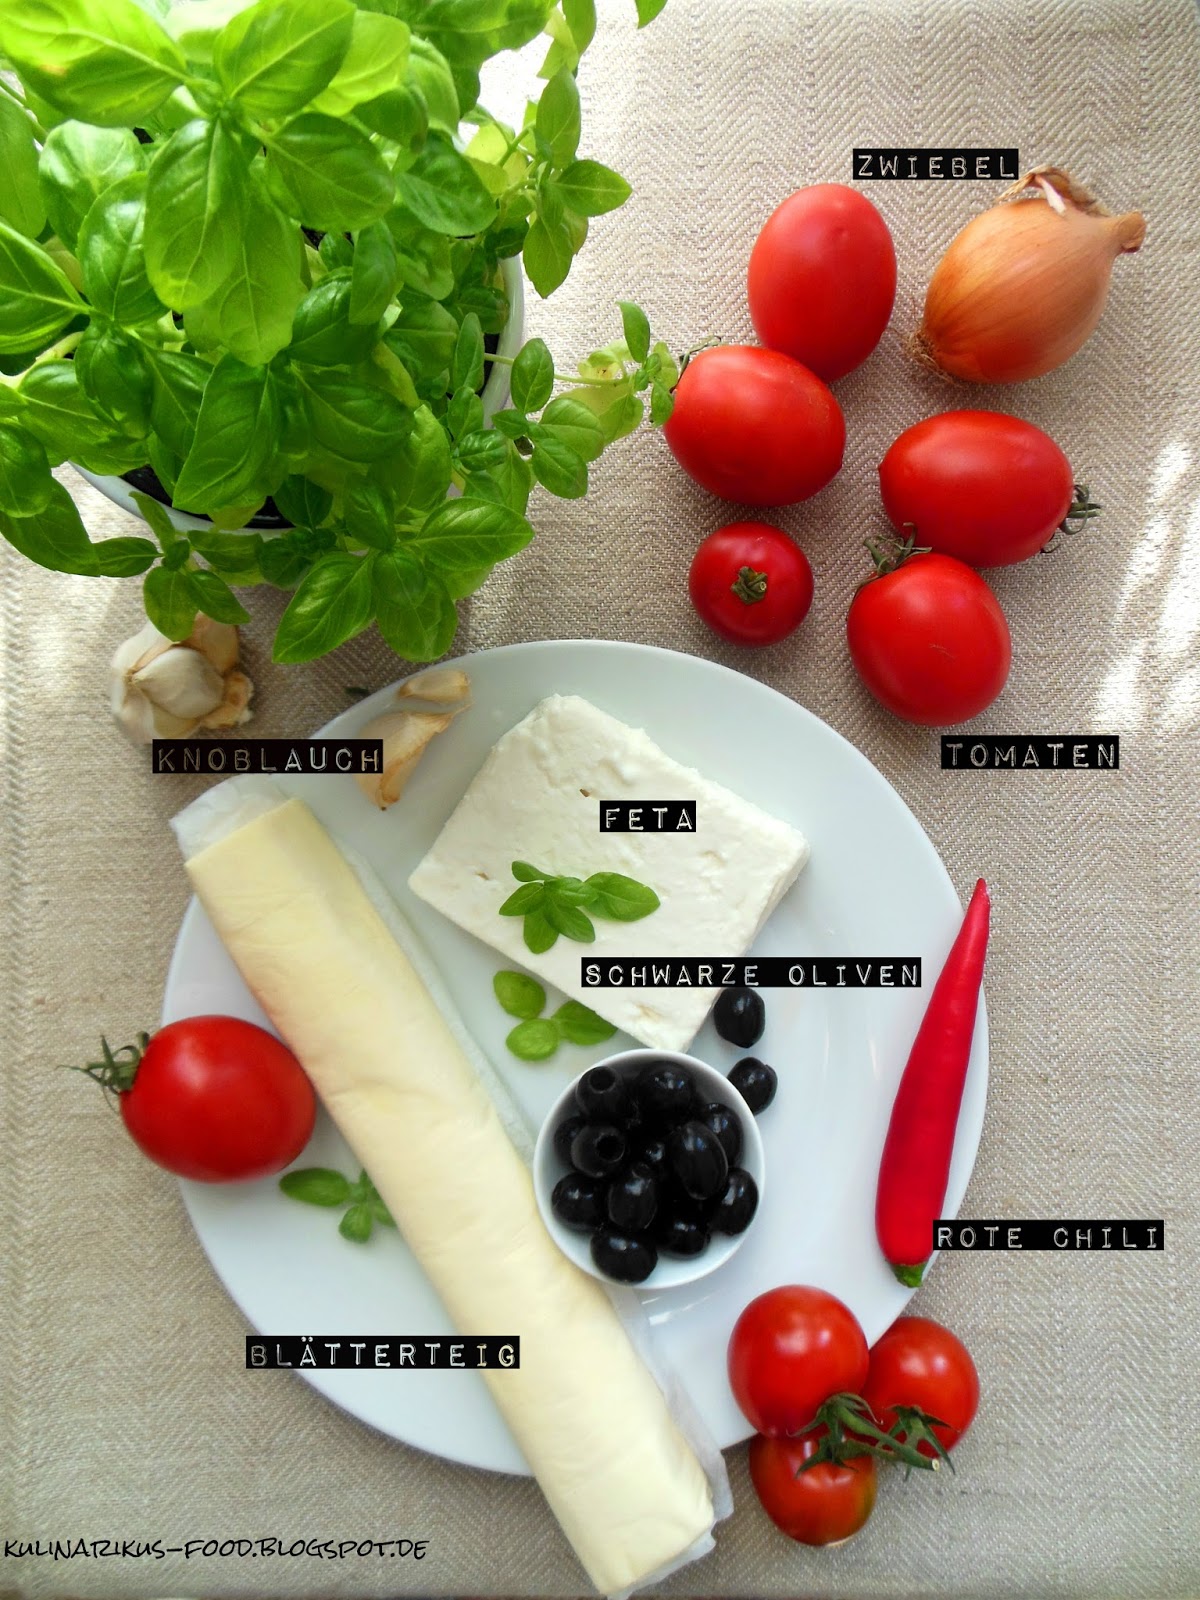 Kulinarikus: Tomatentarte mit Feta, schwarzen Oliven und Pesto